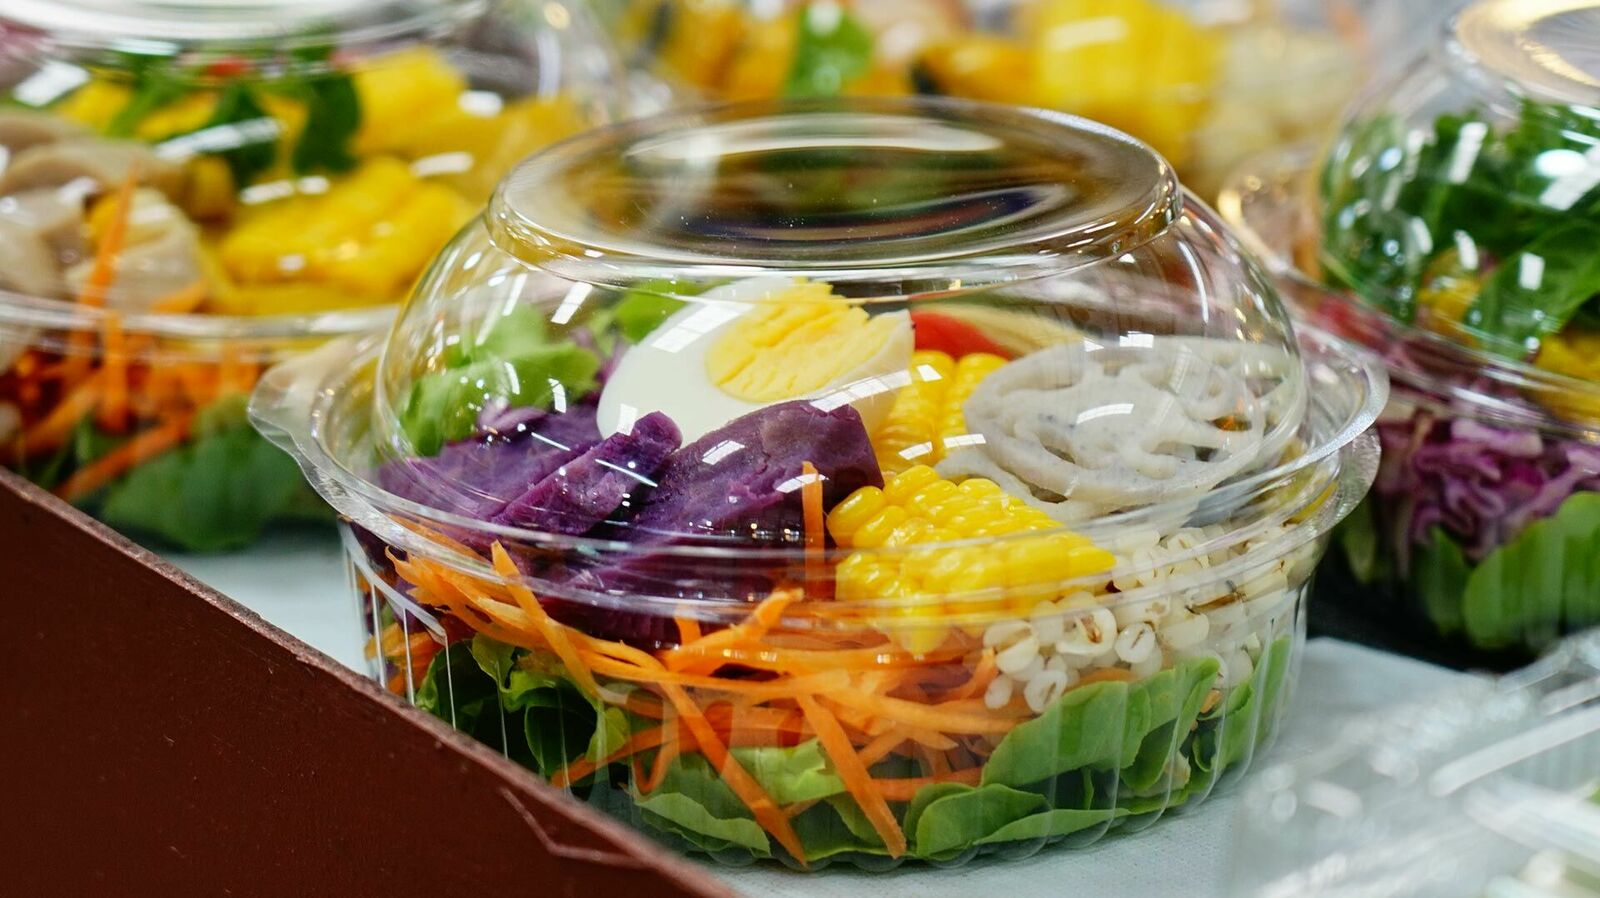 In einem Kühlregal stehen mehrere bunte Salate in einer durchsichtigen Kunststoff-Verpackung